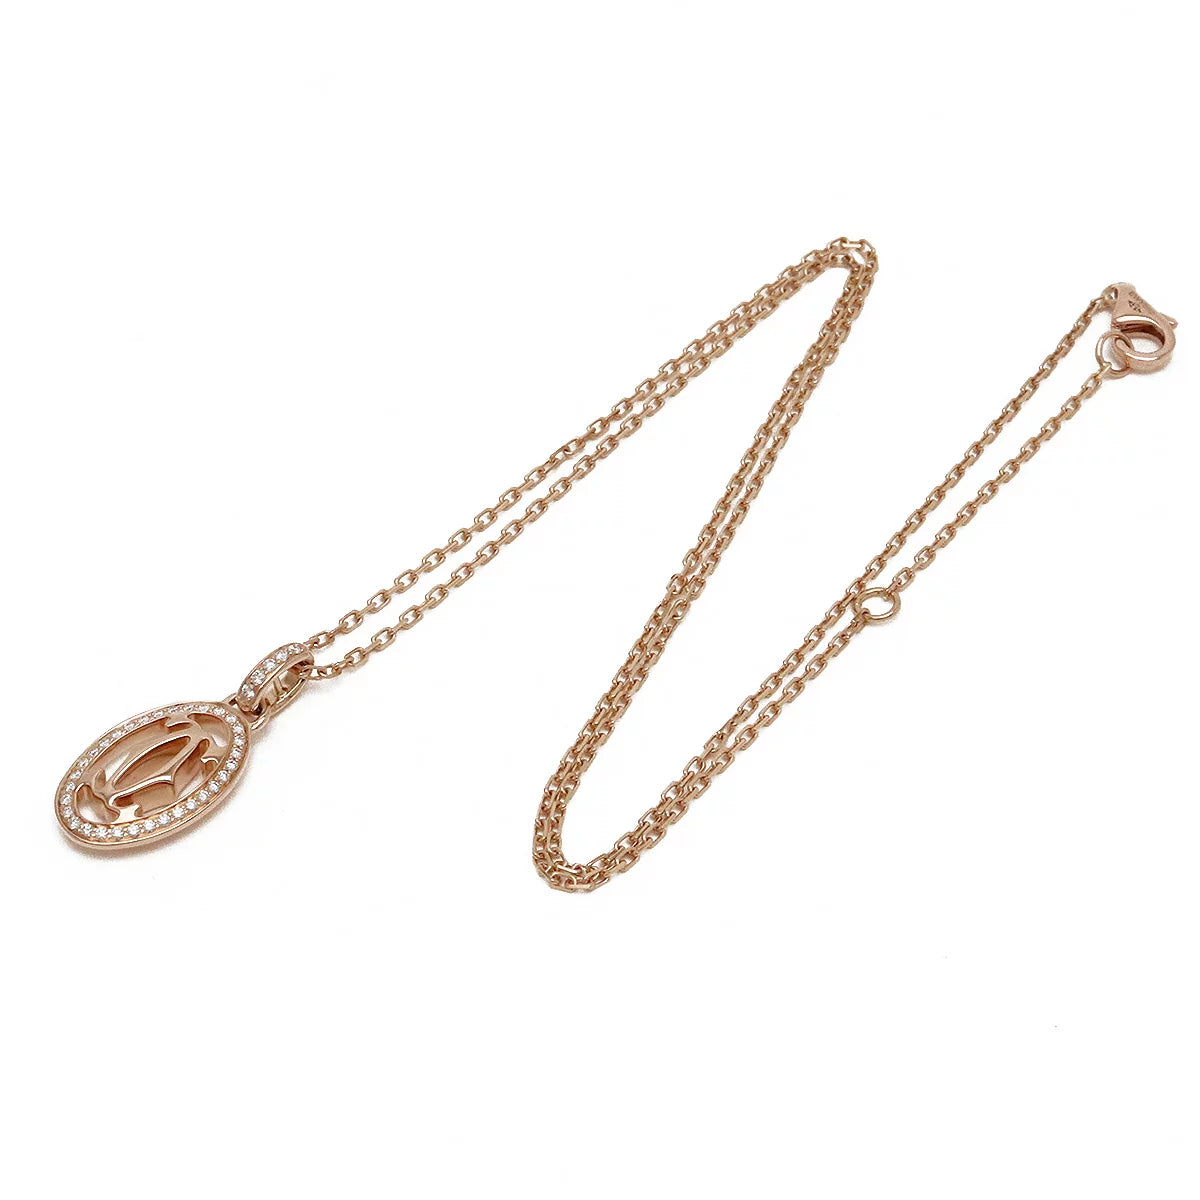 Cartier Logo Double C Pendant Necklace K18PG Diamond B7219300 Pink Gold